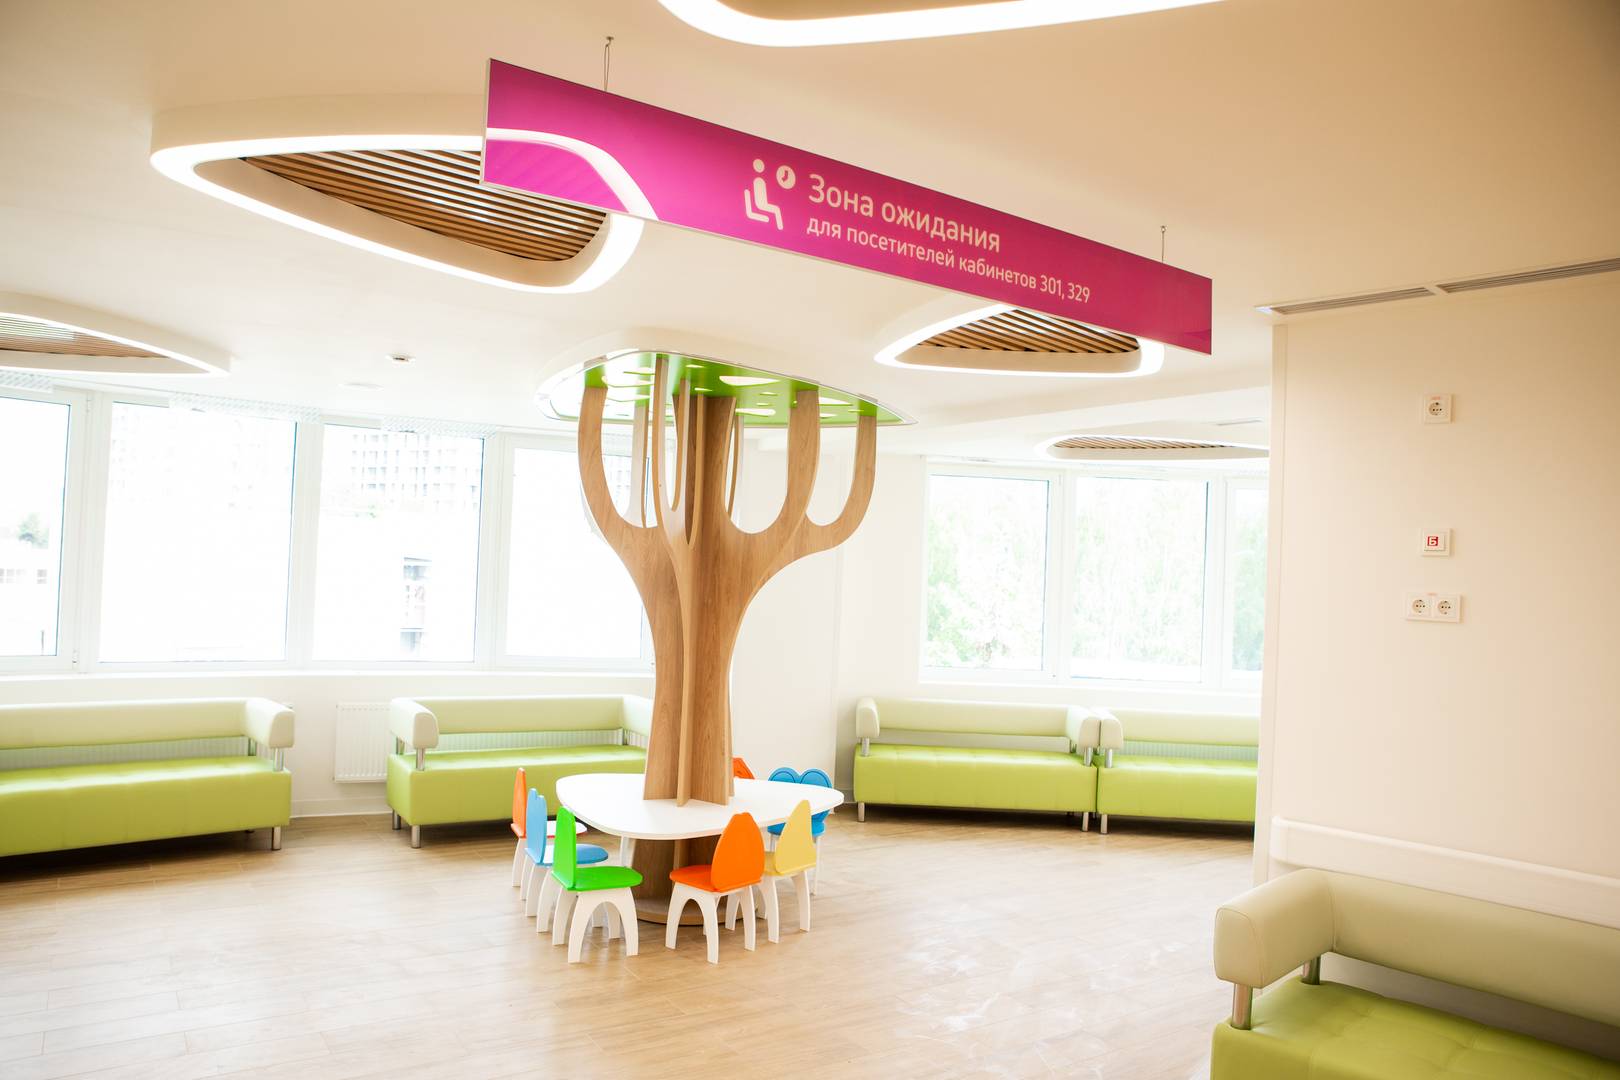 Такие деревья установлены для детей в каждой поликлинике по новому московскому стандарту